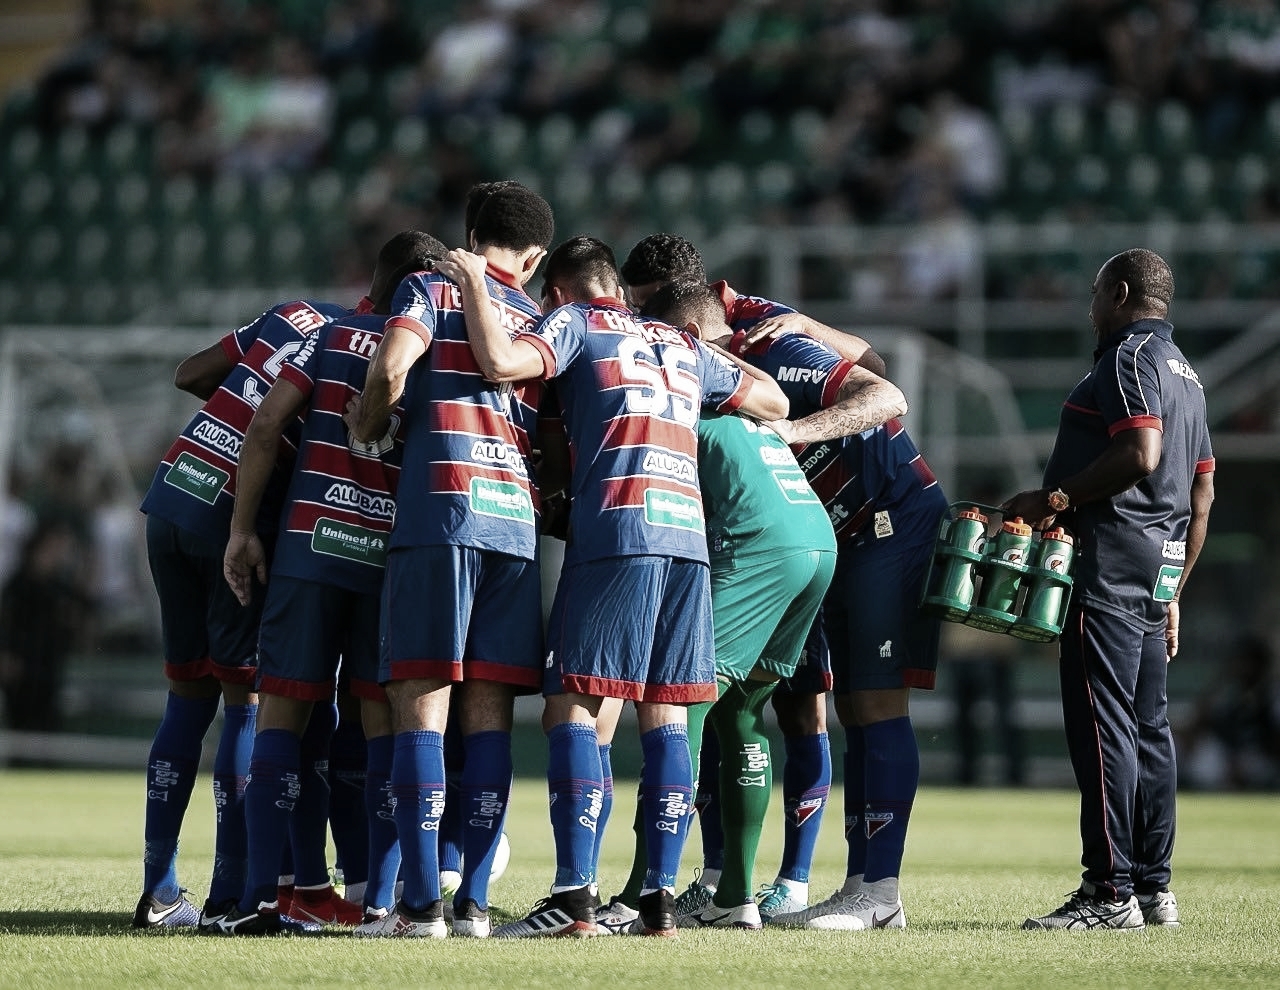 Osvaldo comemora resultado positivo do Fortaleza fora de casa: “Grande vitória”